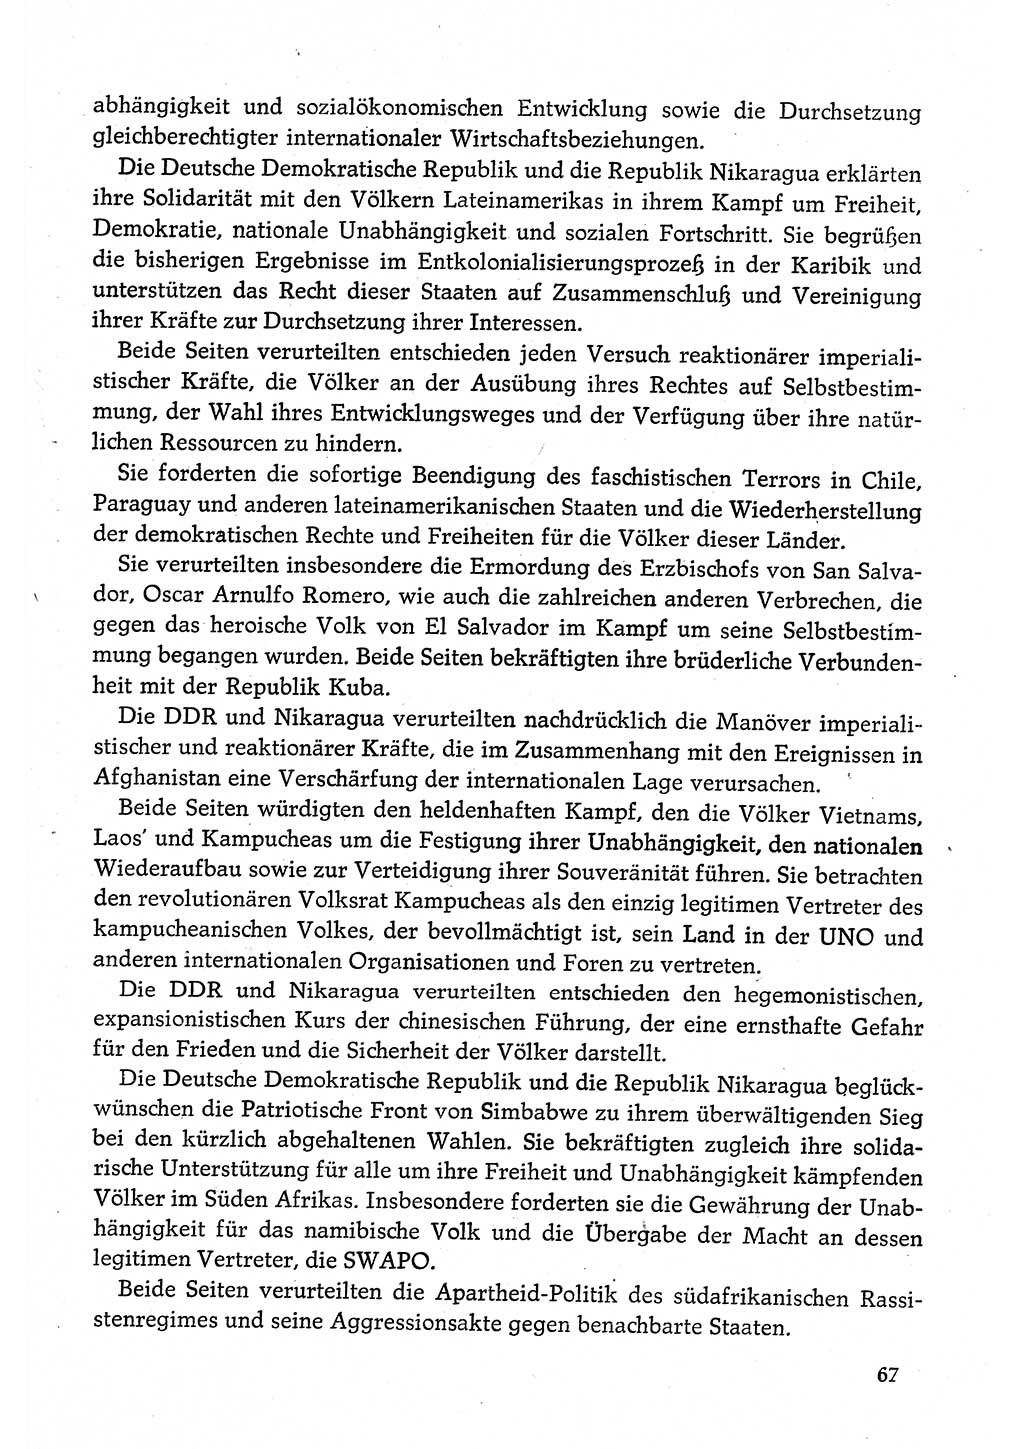 Dokumente der Sozialistischen Einheitspartei Deutschlands (SED) [Deutsche Demokratische Republik (DDR)] 1980-1981, Seite 67 (Dok. SED DDR 1980-1981, S. 67)